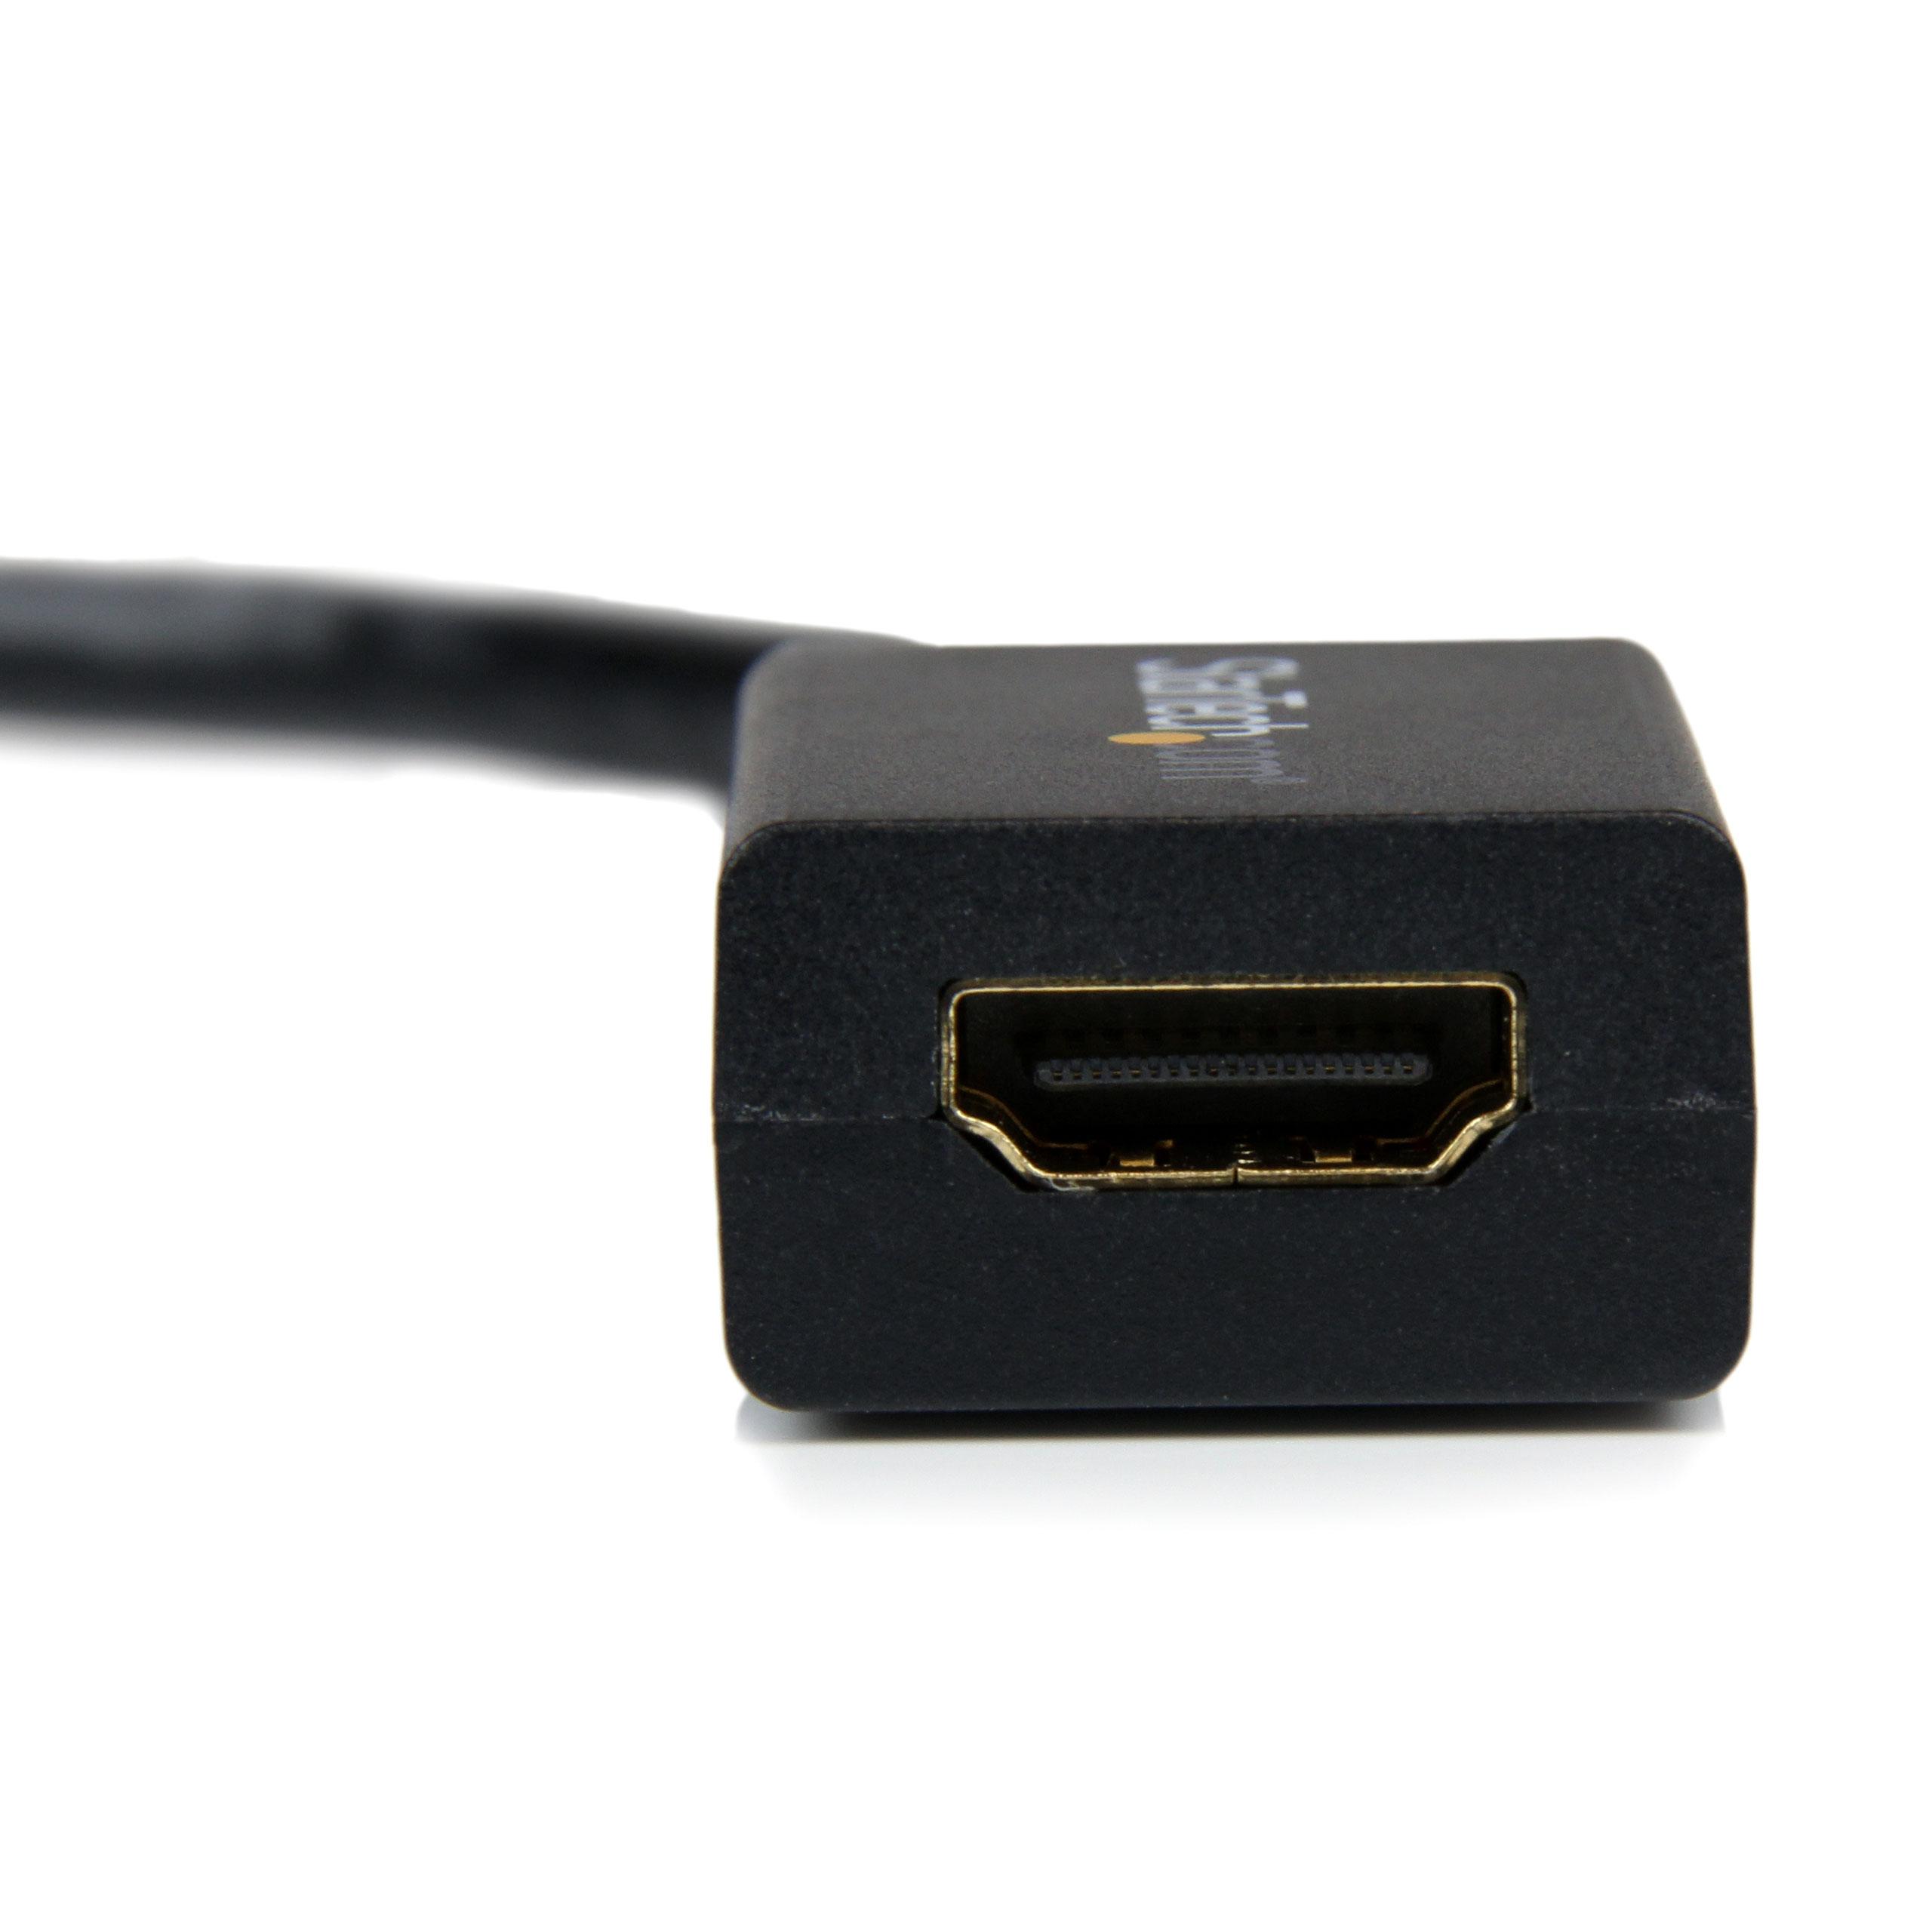 Adaptador de Display Port a HDMI